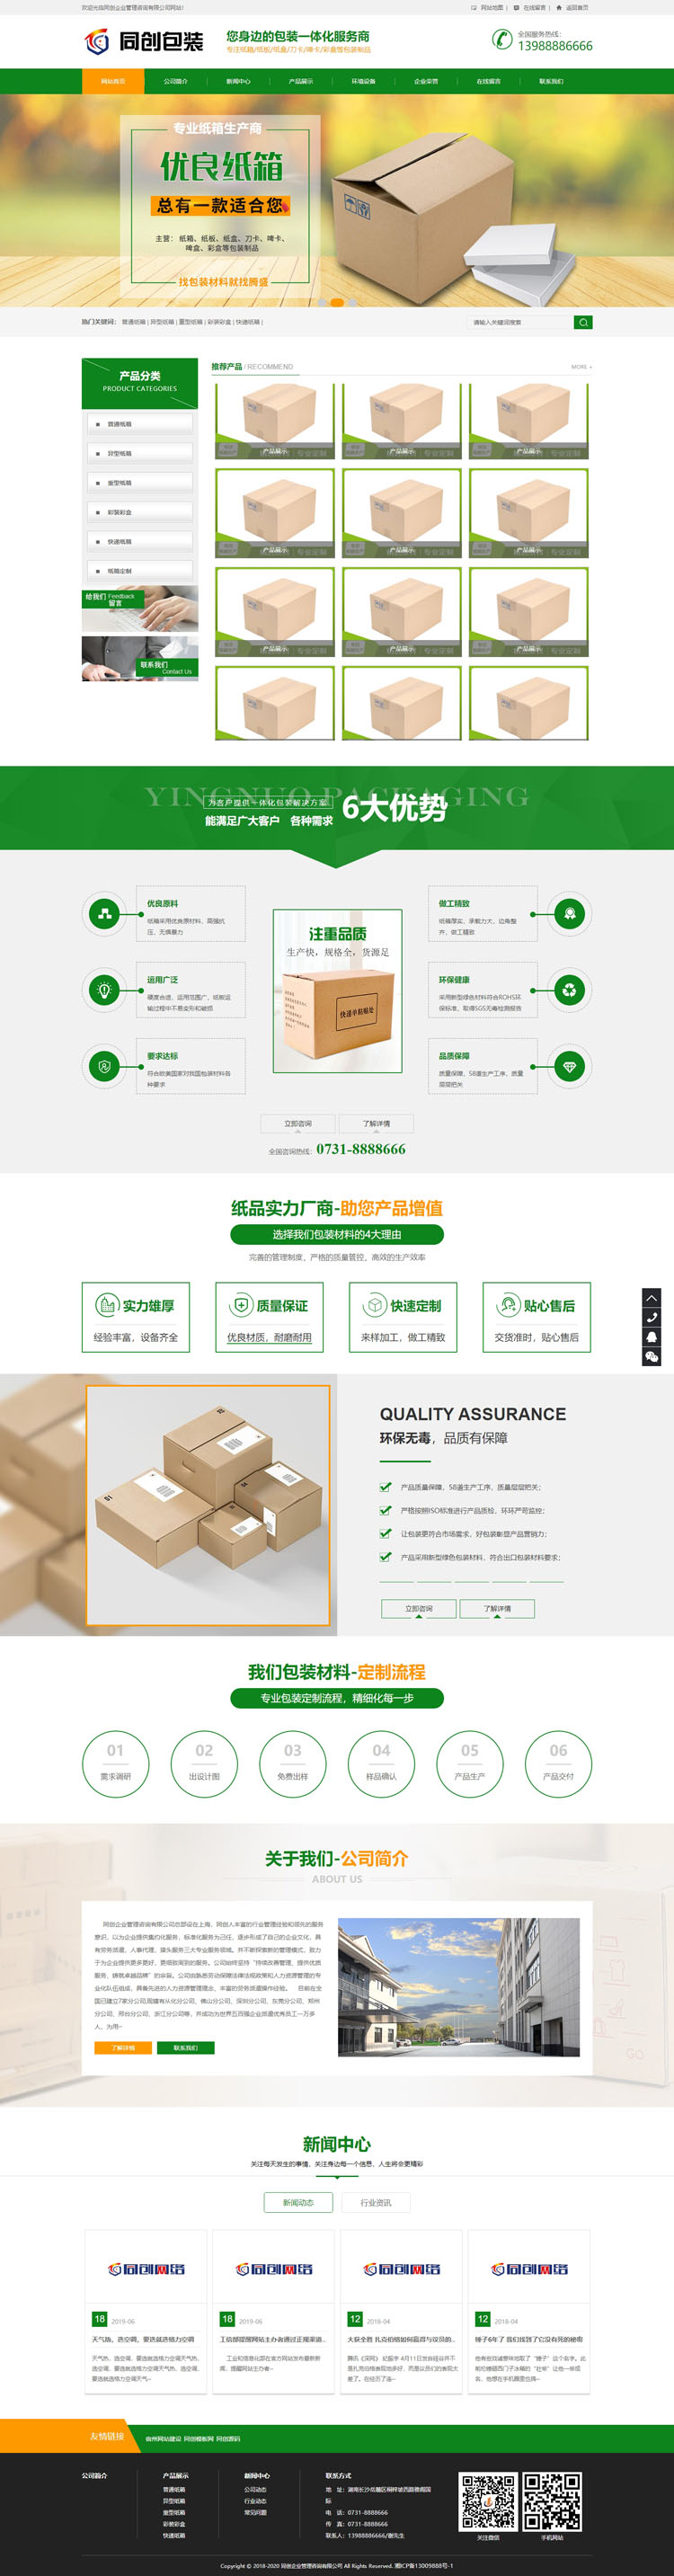 包装材料企业网站源码程序-PB006-2